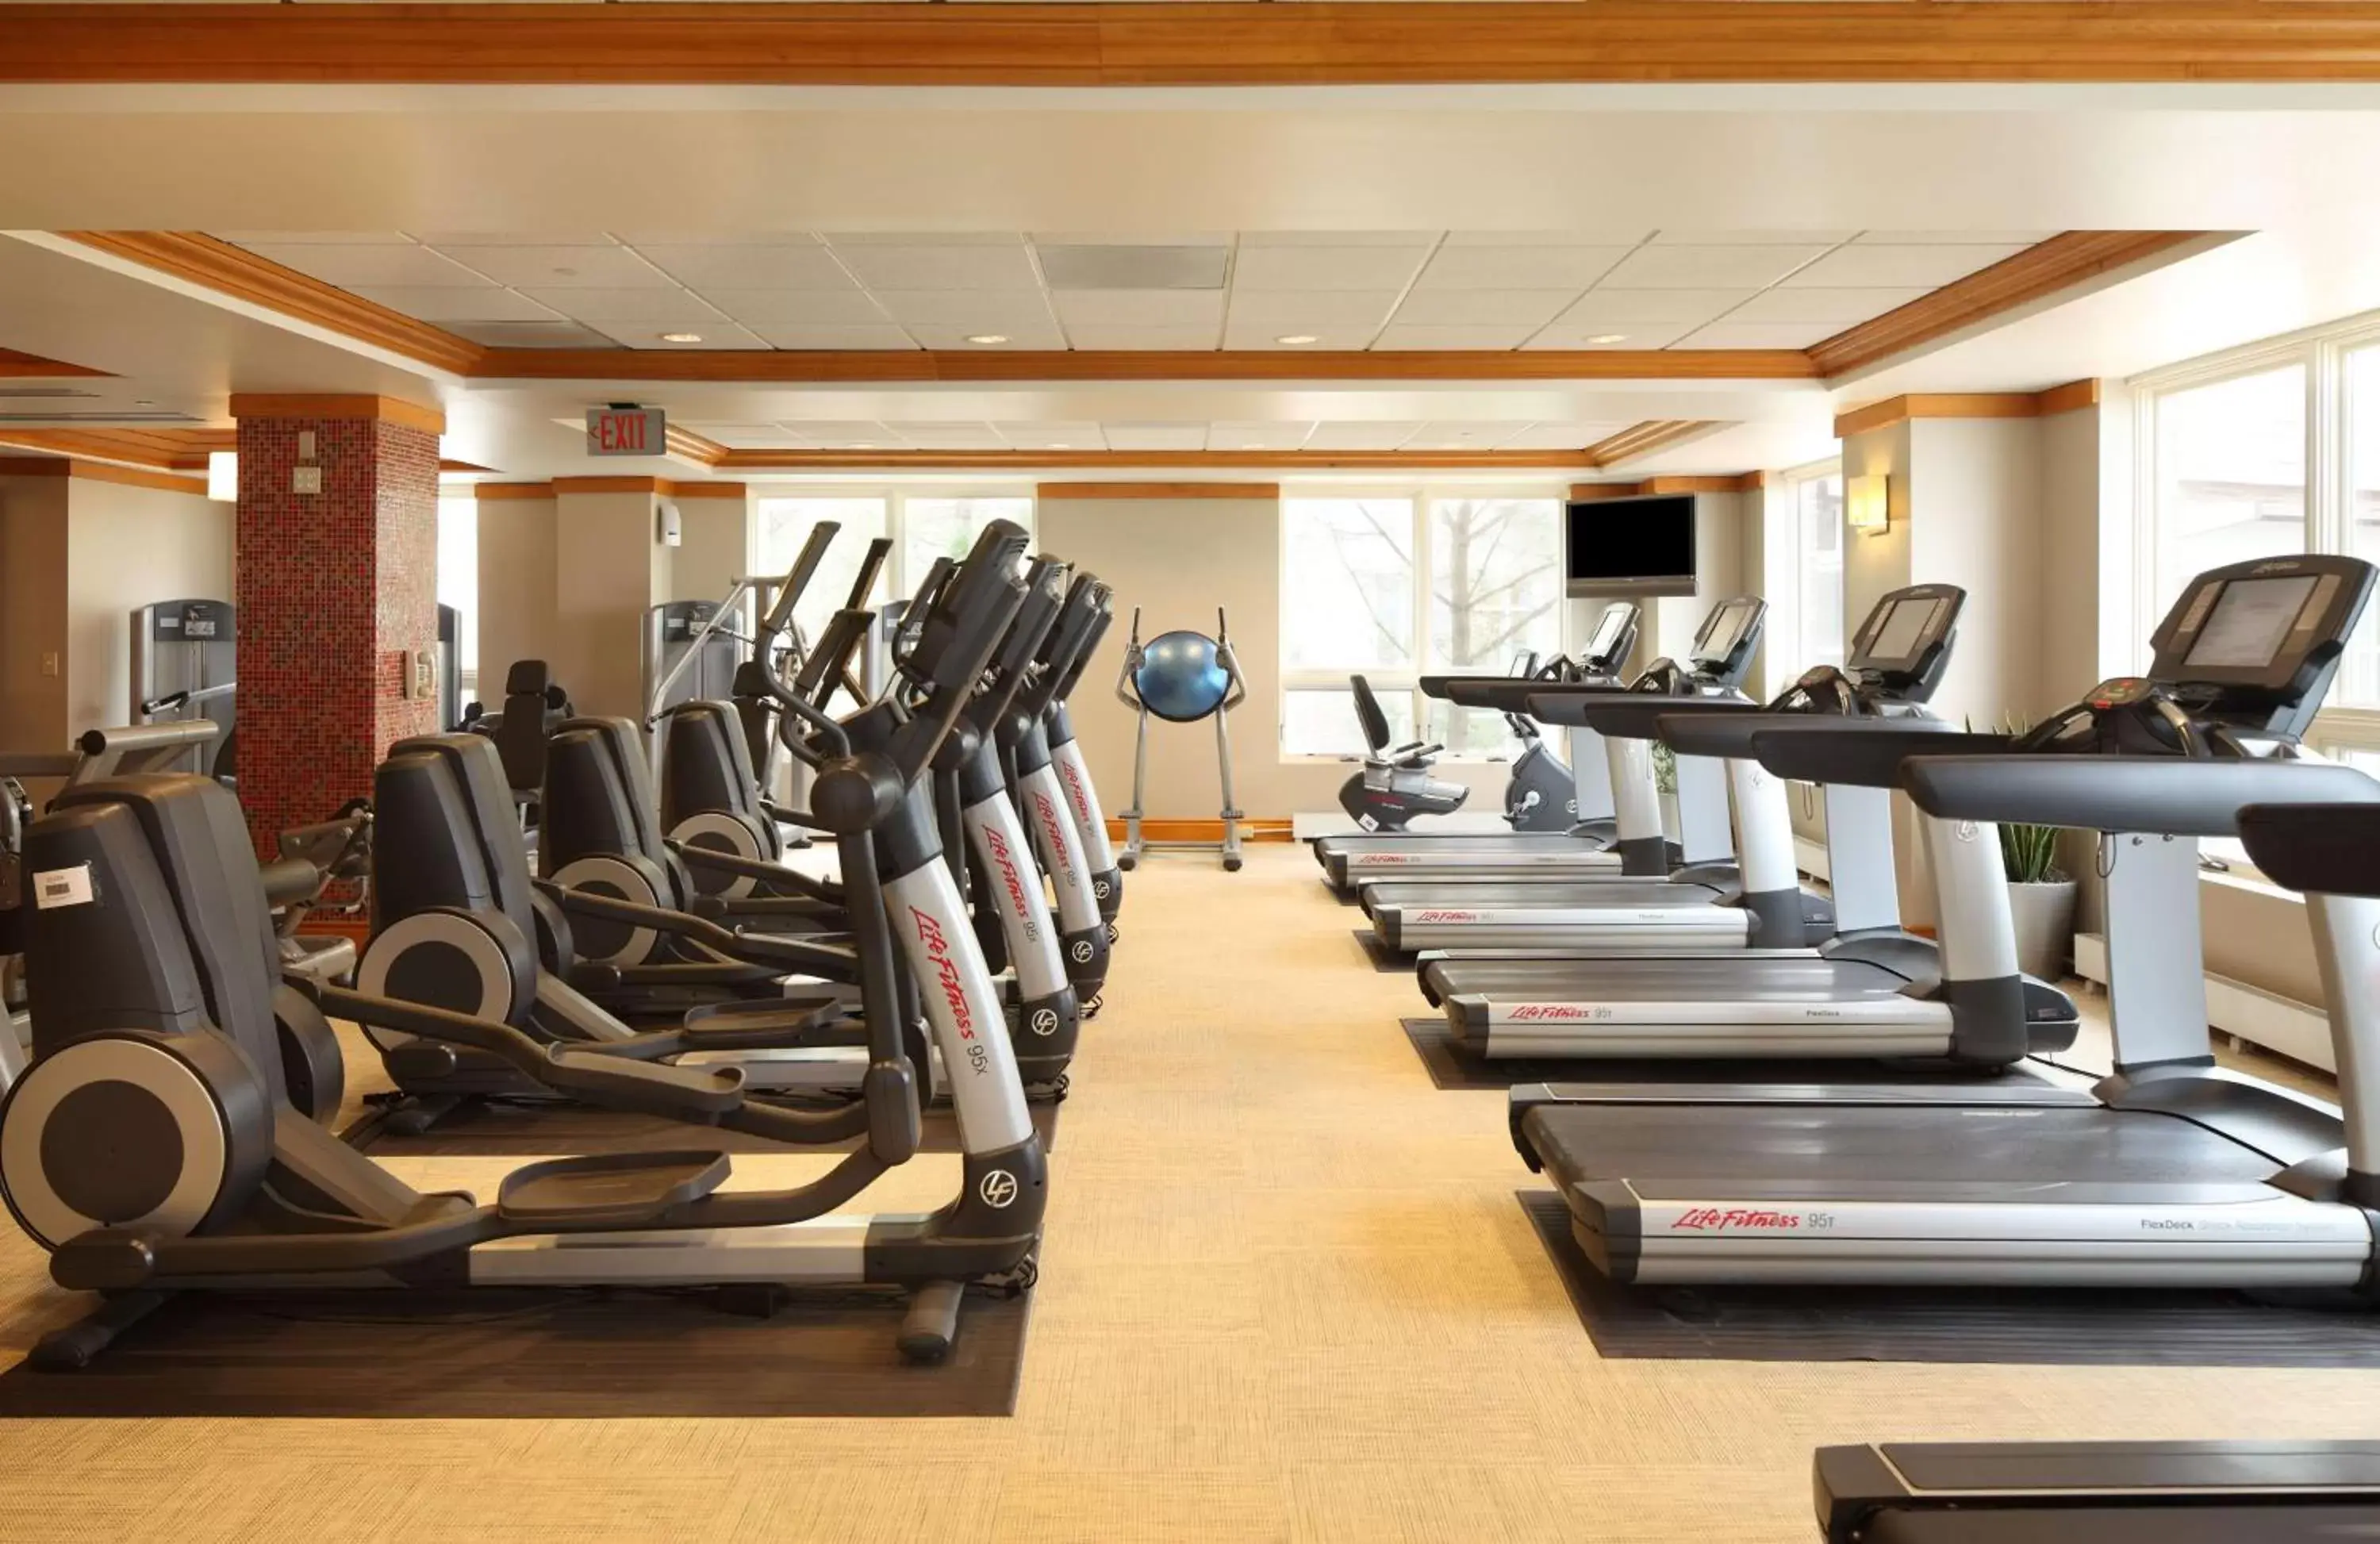 Fitness centre/facilities, Fitness Center/Facilities in Hyatt Regency Chesapeake Bay Golf Resort, Spa & Marina